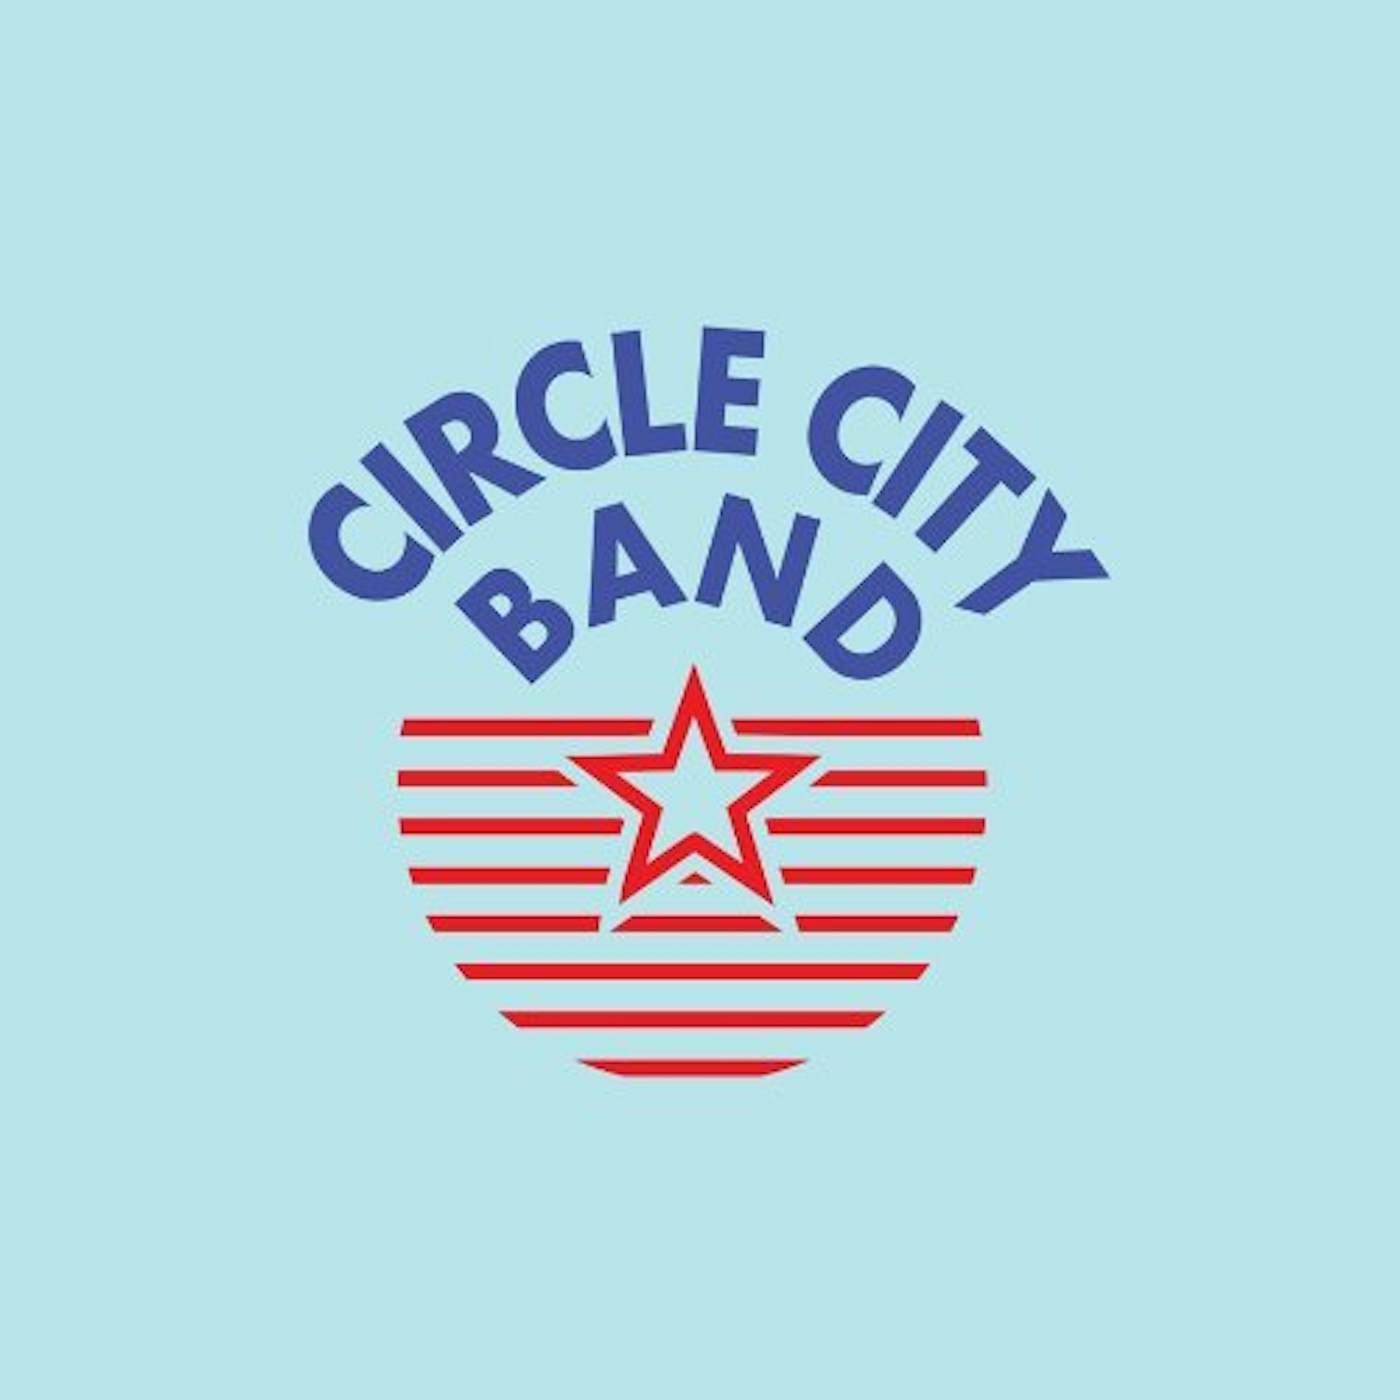 CIRCLE CITY BAND CD